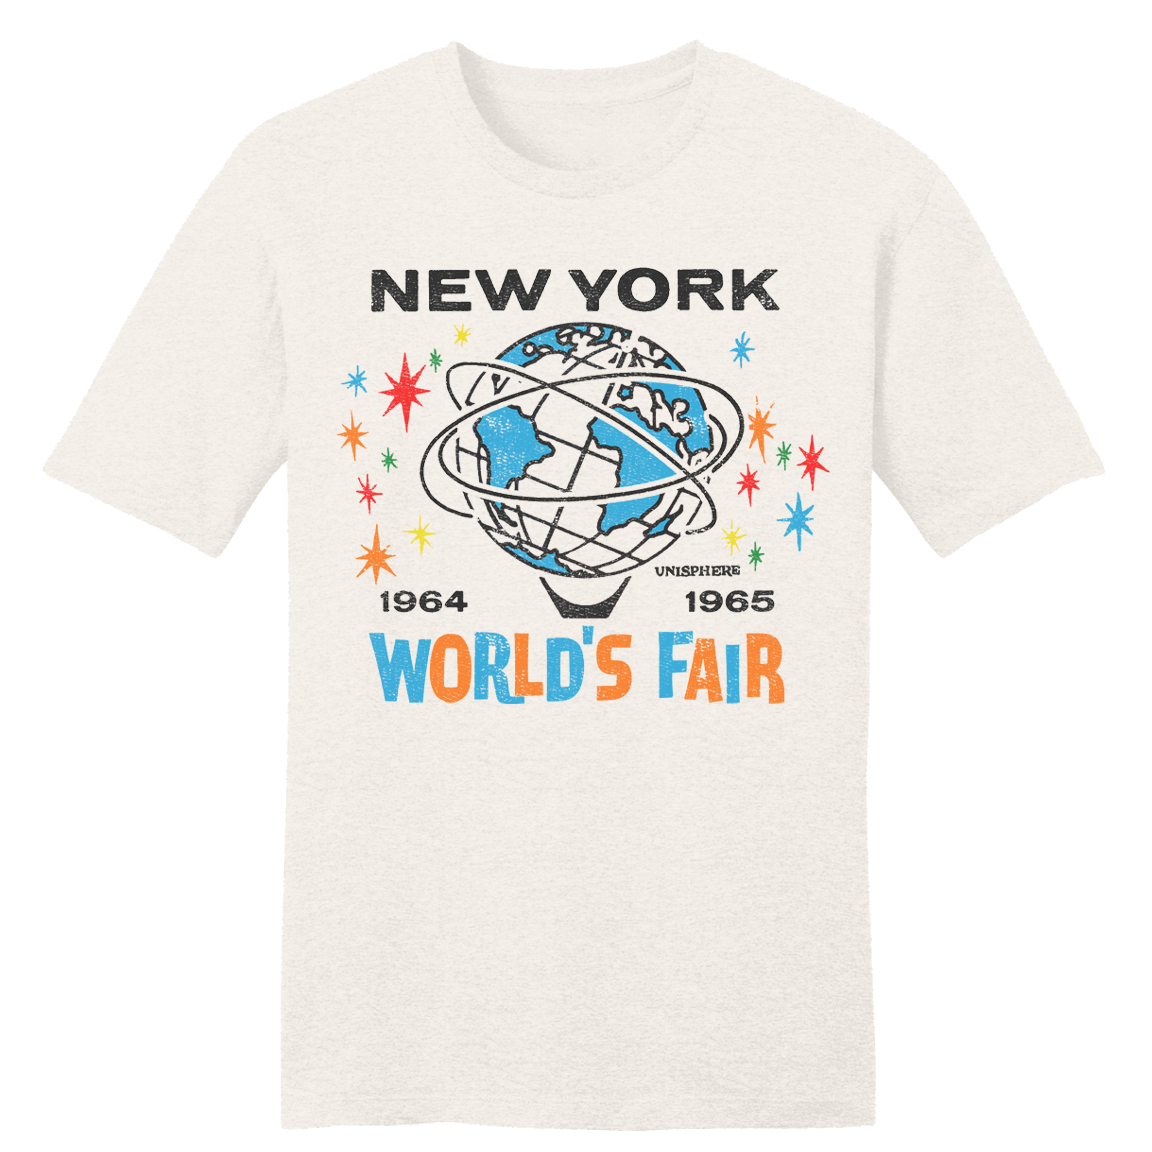 New York World's Fair 1964-1965 tee